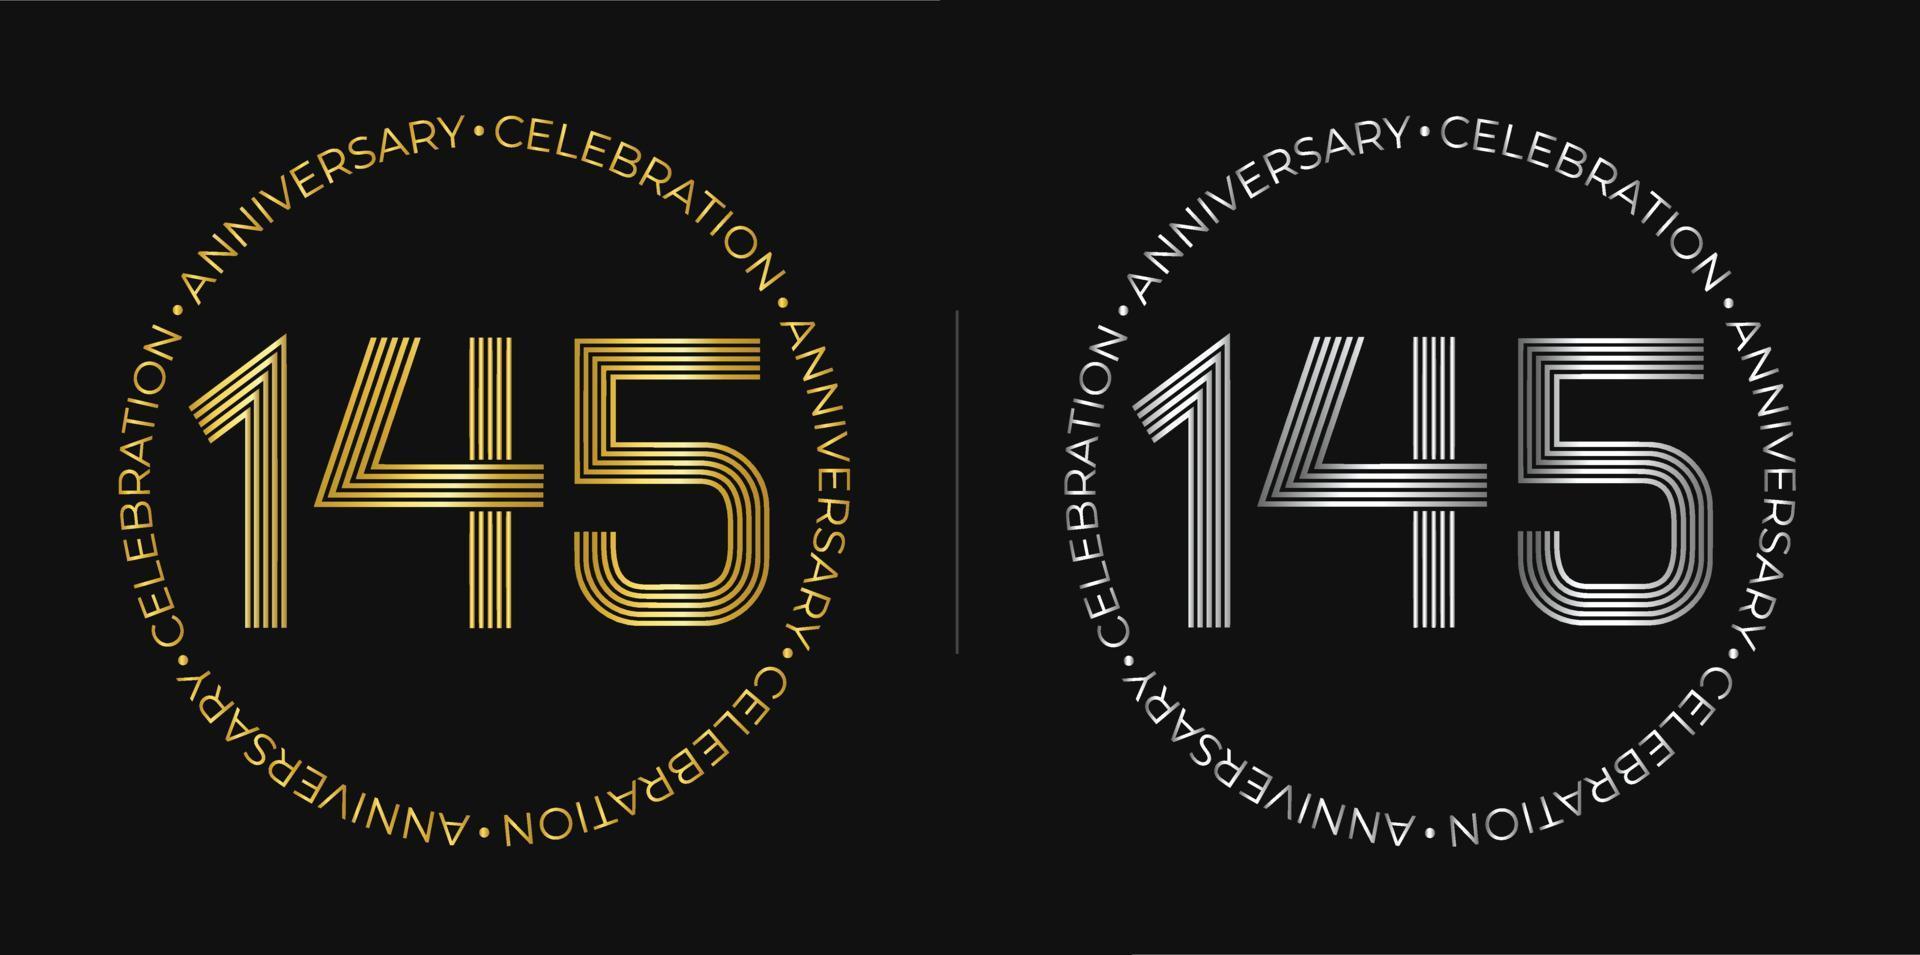 145e anniversaire. bannière de célébration d'anniversaire de cent quarante-cinq ans aux couleurs dorées et argentées. logo circulaire avec des chiffres originaux aux lignes élégantes. vecteur